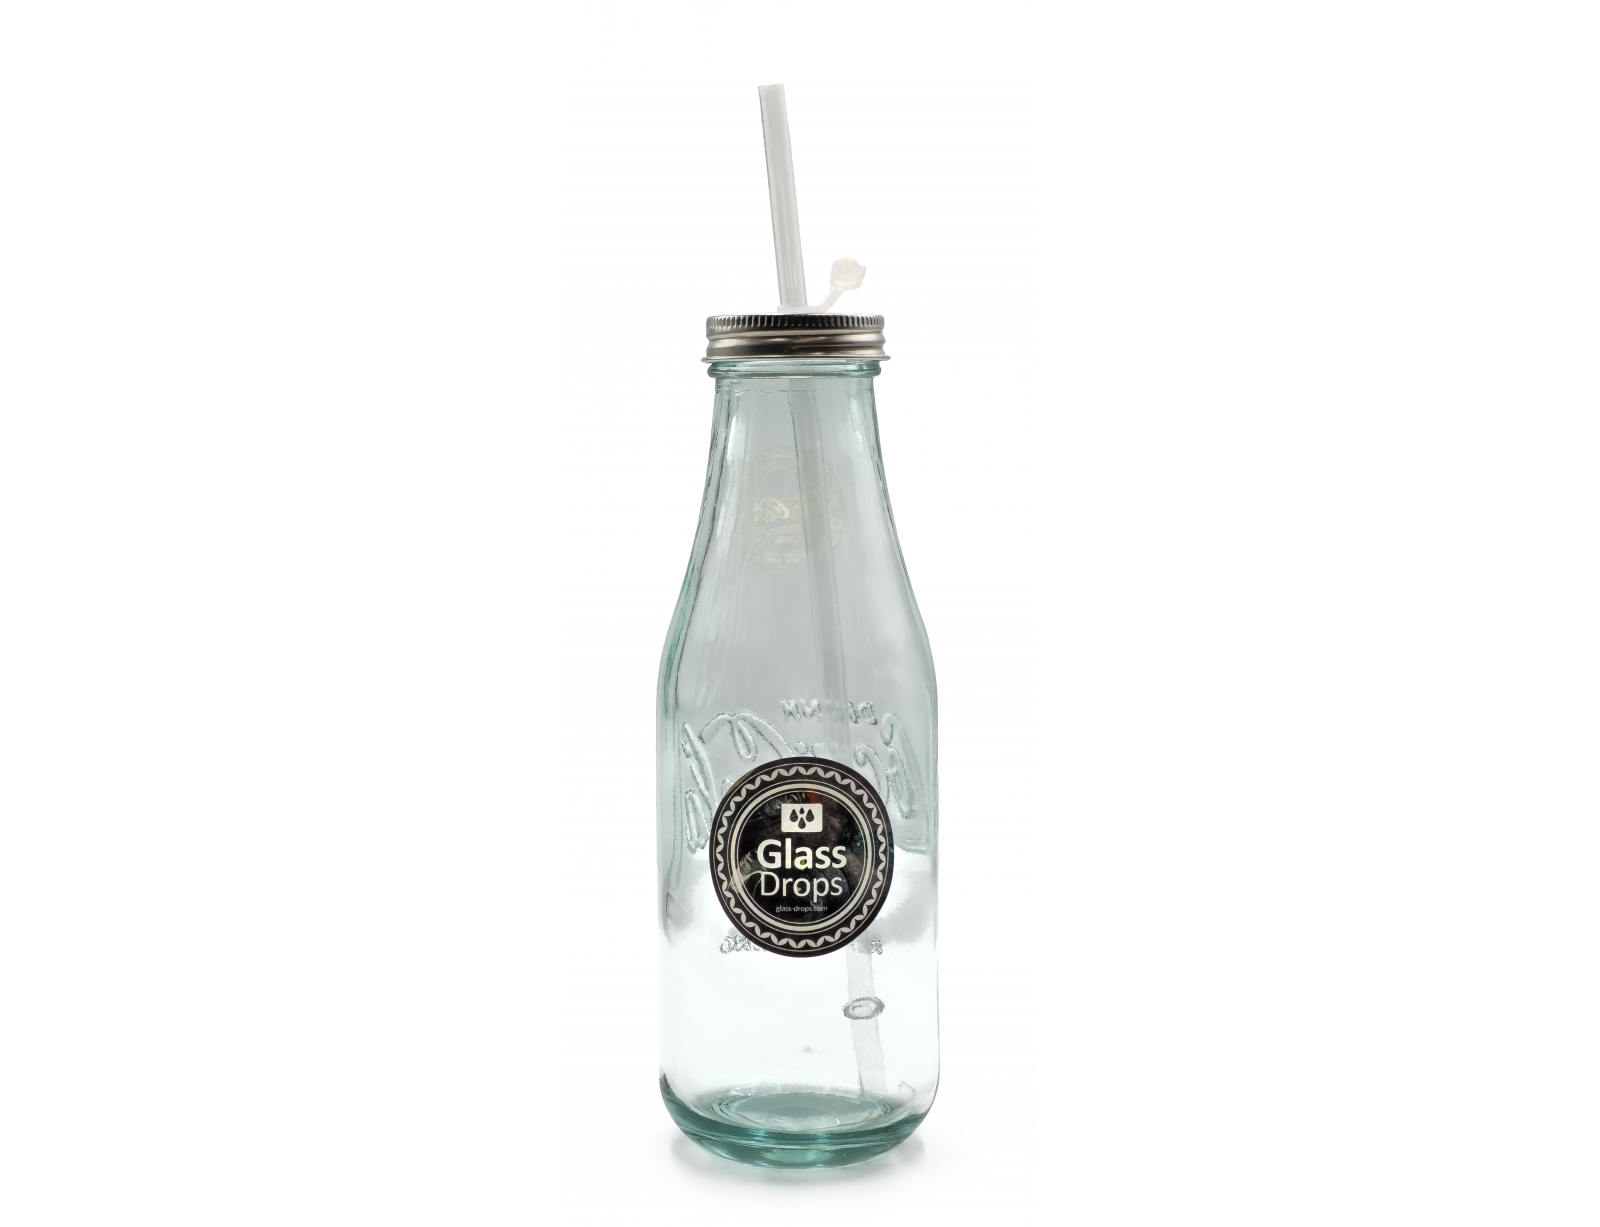 Εικόνα Μπουκάλι Glass Drops Coca Cola (9014) Με πώμα και καλαμάκι, Aπό 100% ανακυκλωμένο γυαλί, Xωρητικότητας 550ml, Διαστάσεων Ø 8 x Υ 28 cm